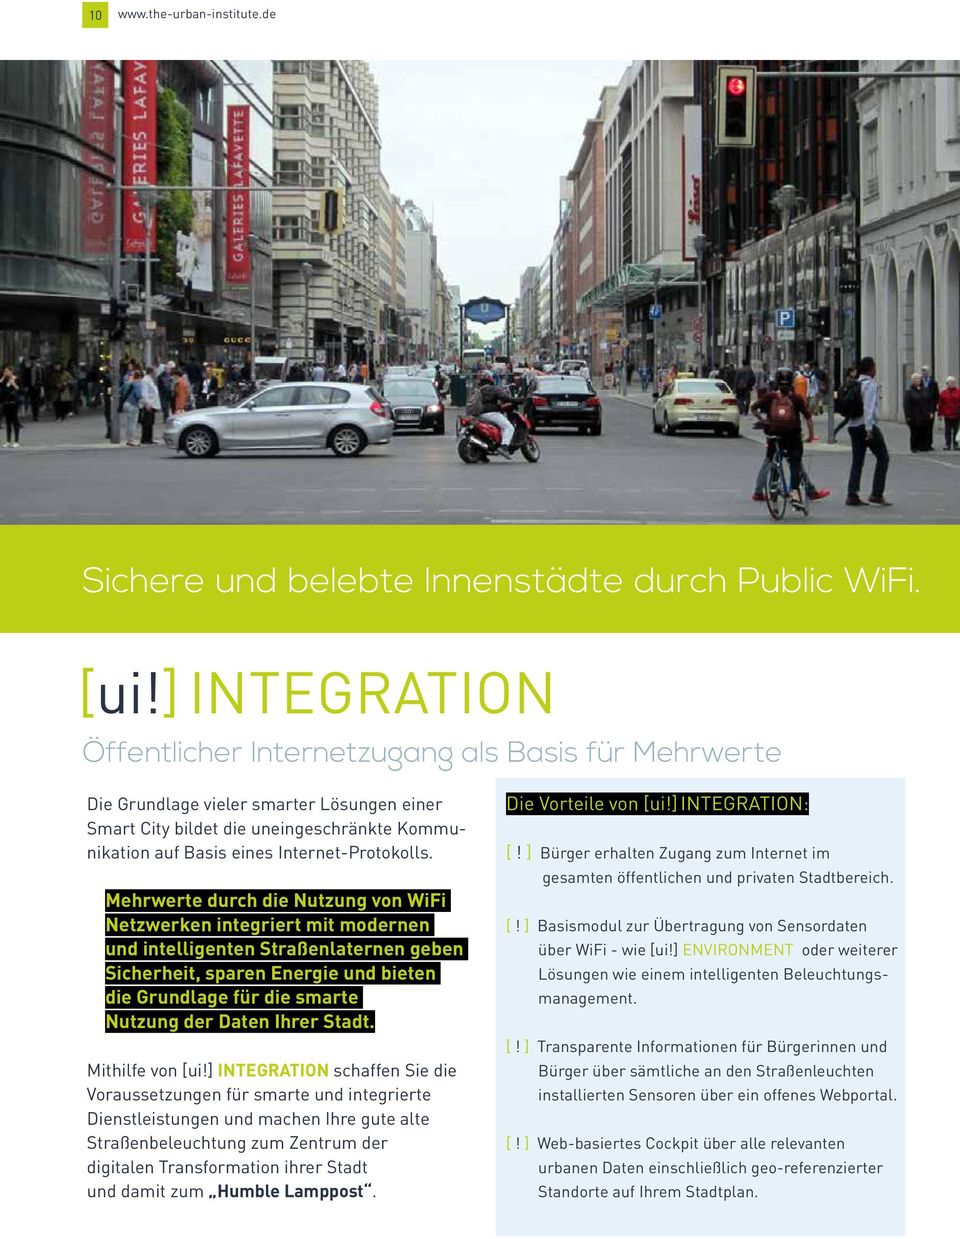 Mehrwerte durch die Nutzung von WiFi Netzwerken integriert mit modernen und intelligenten Straßenlaternen geben Sicherheit, sparen Energie und bieten die Grundlage für die smarte Nutzung der Daten